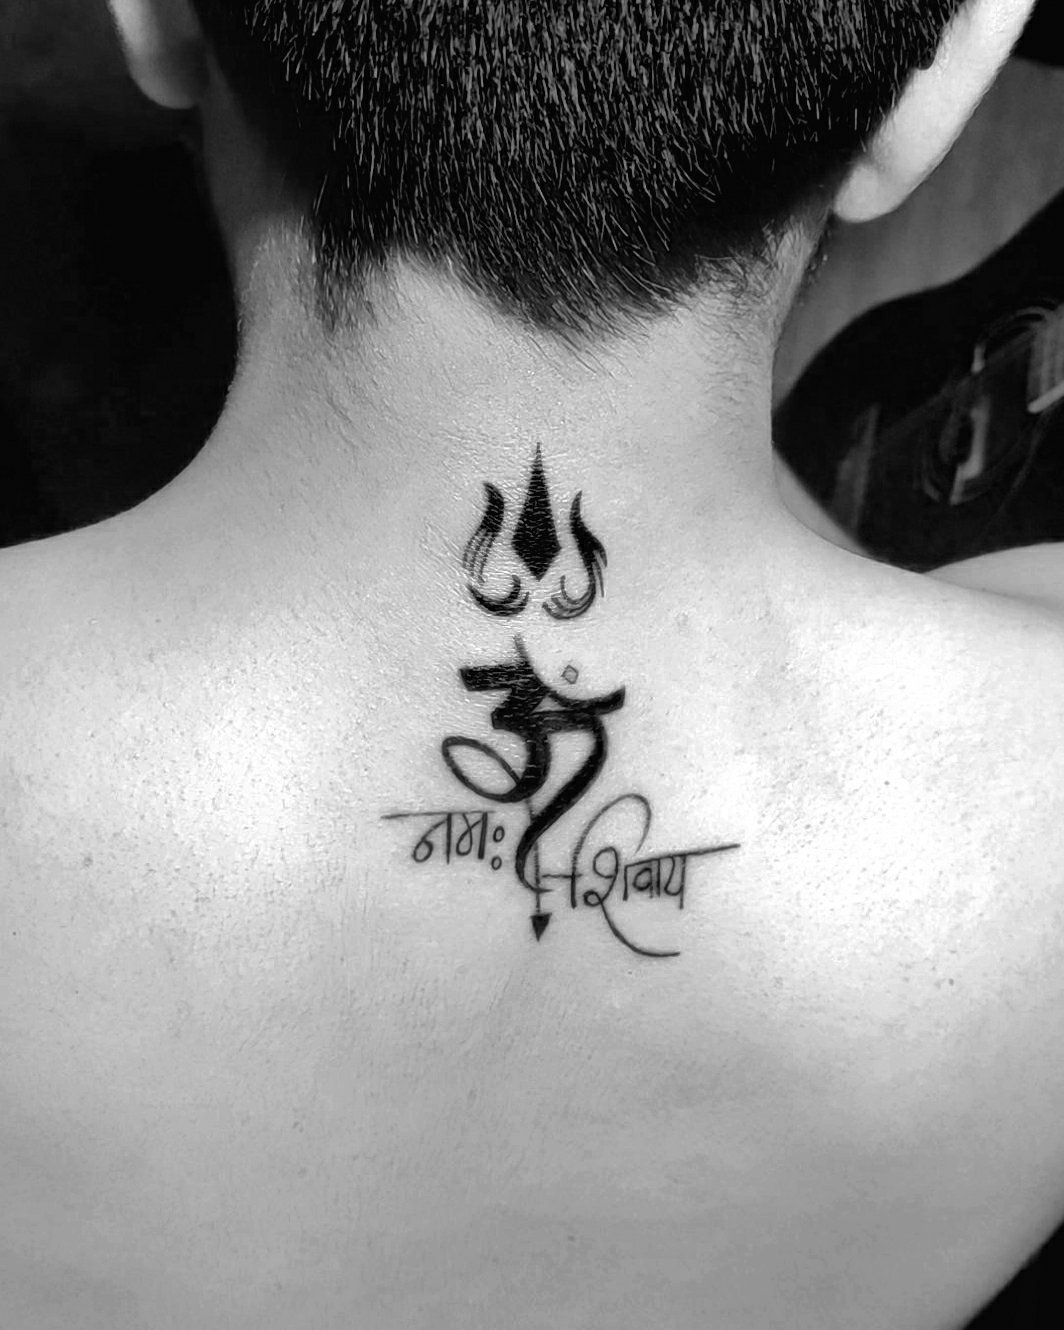 trishul tattoo on back , customised tattoo Shiva tattoo - YouTube